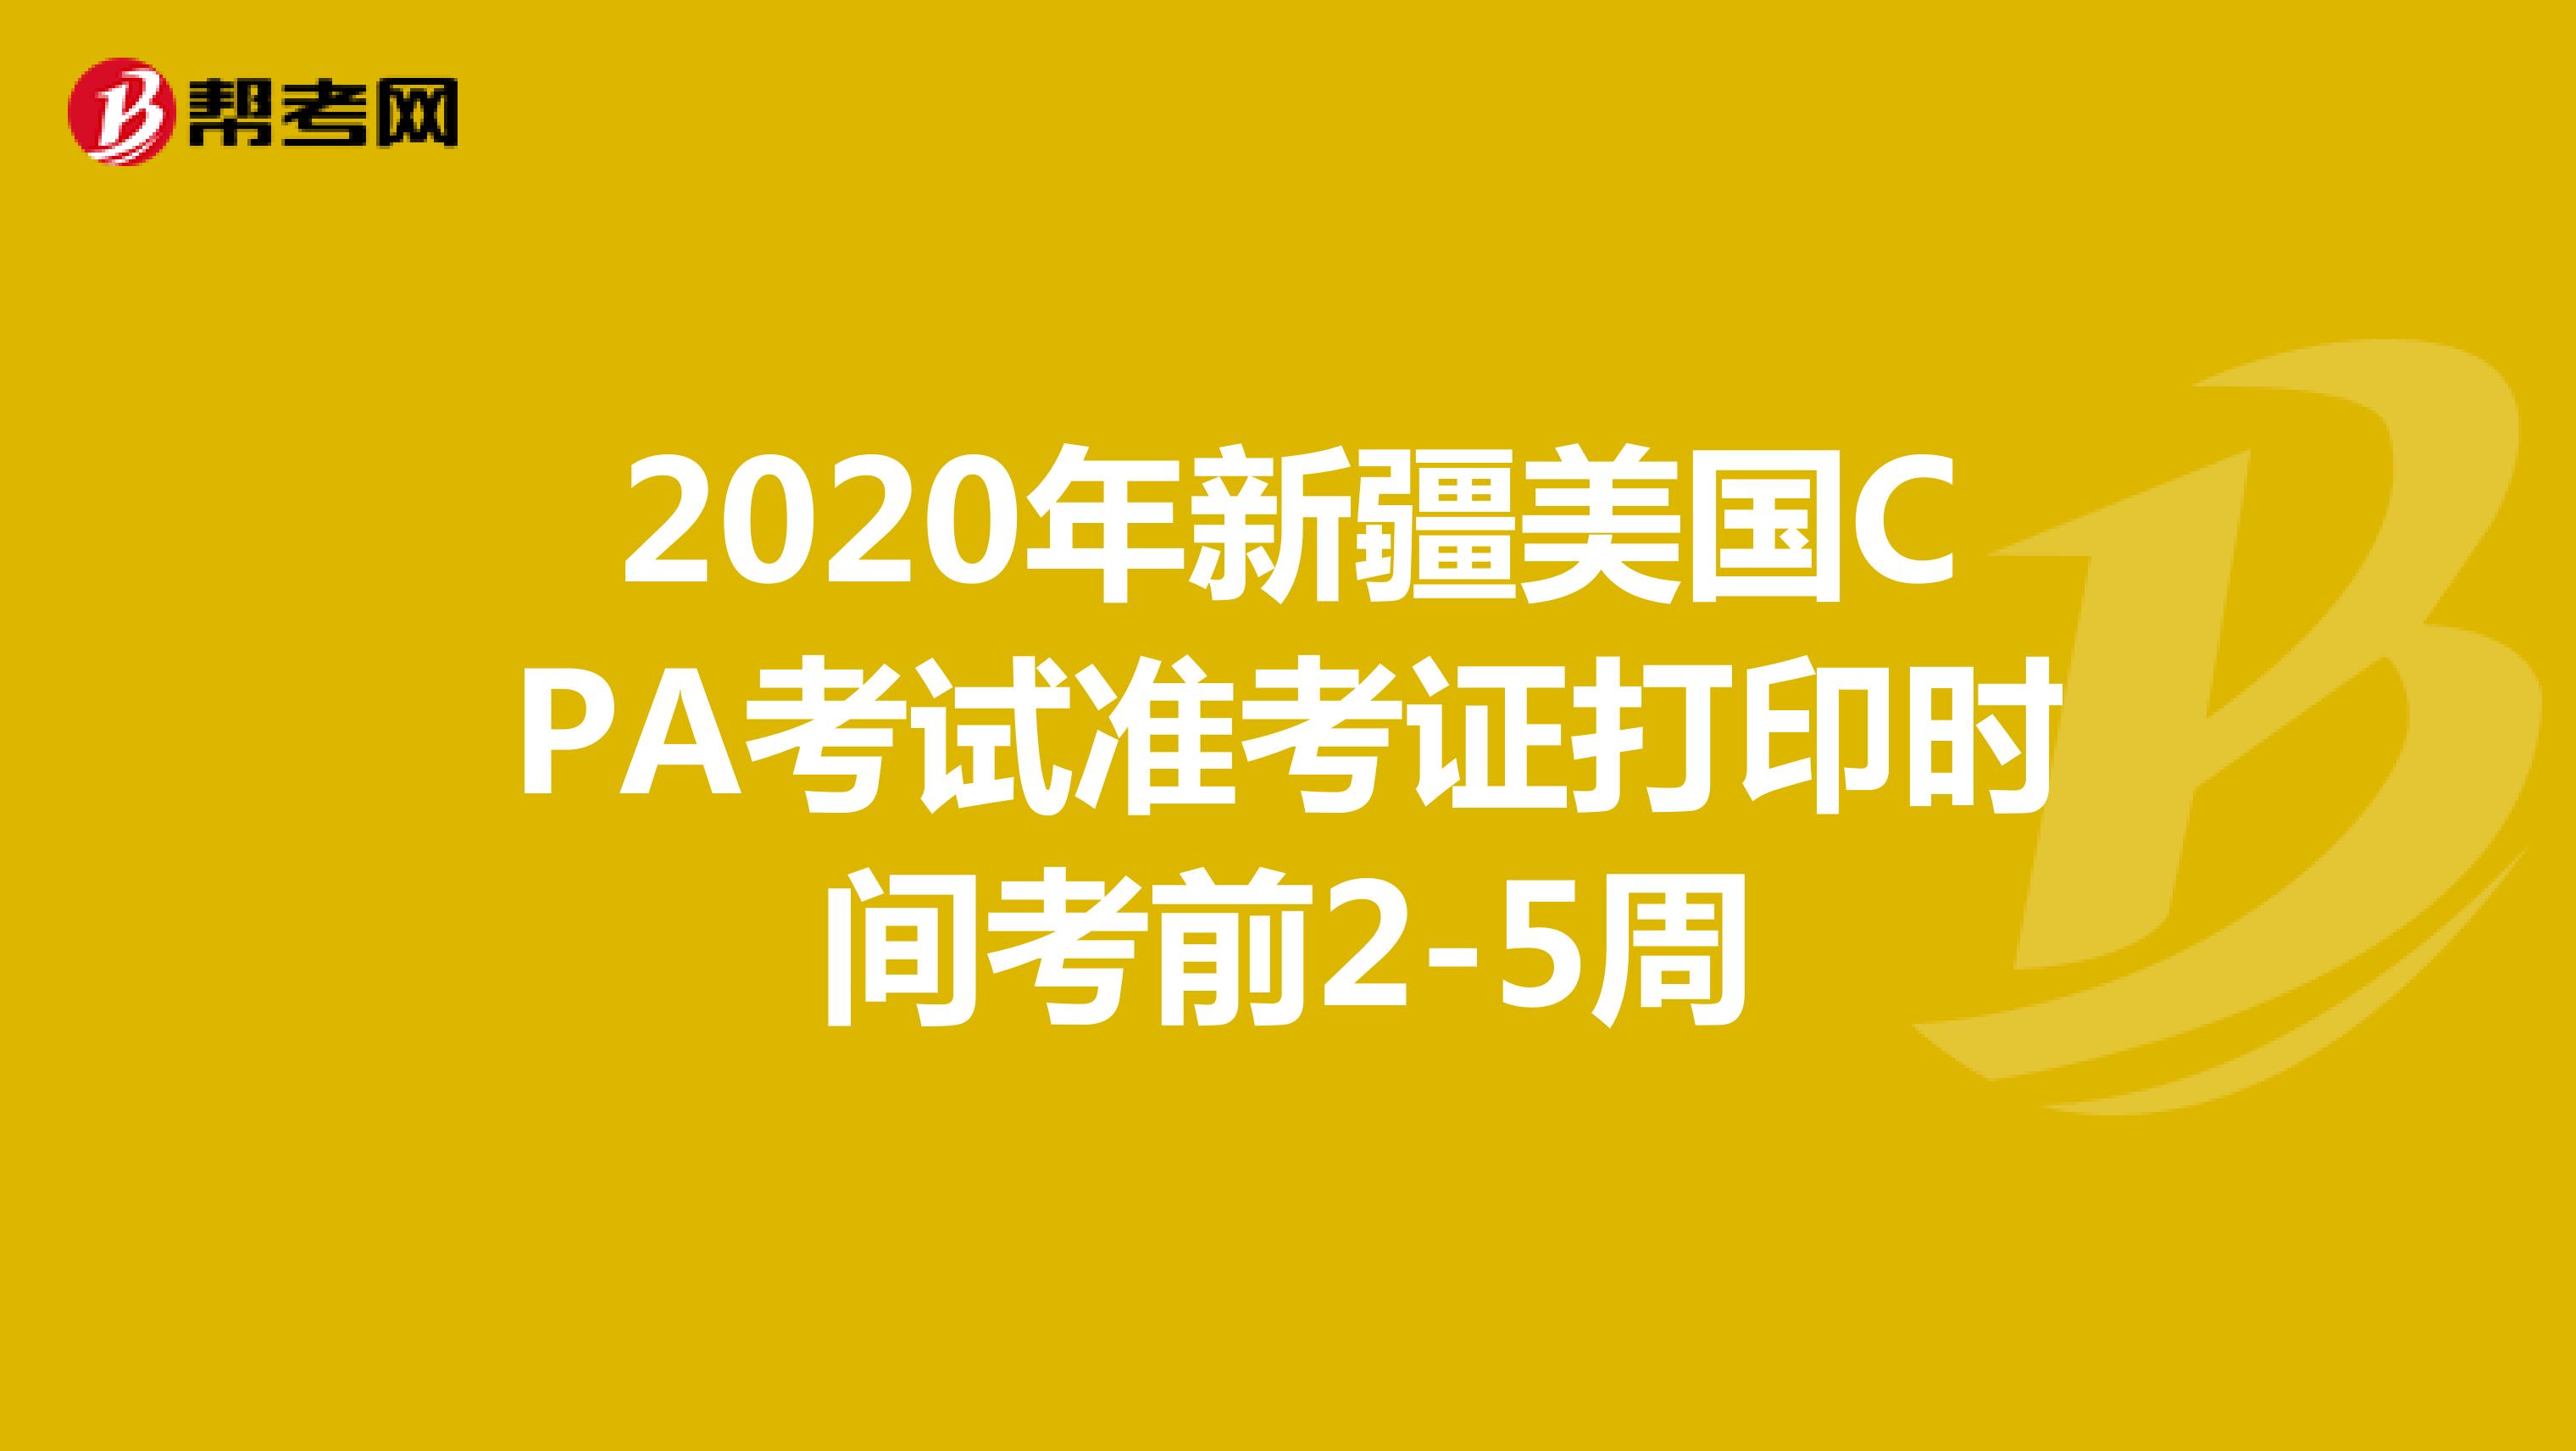 2020年新疆美国CPA考试准考证打印时间考前2-5周